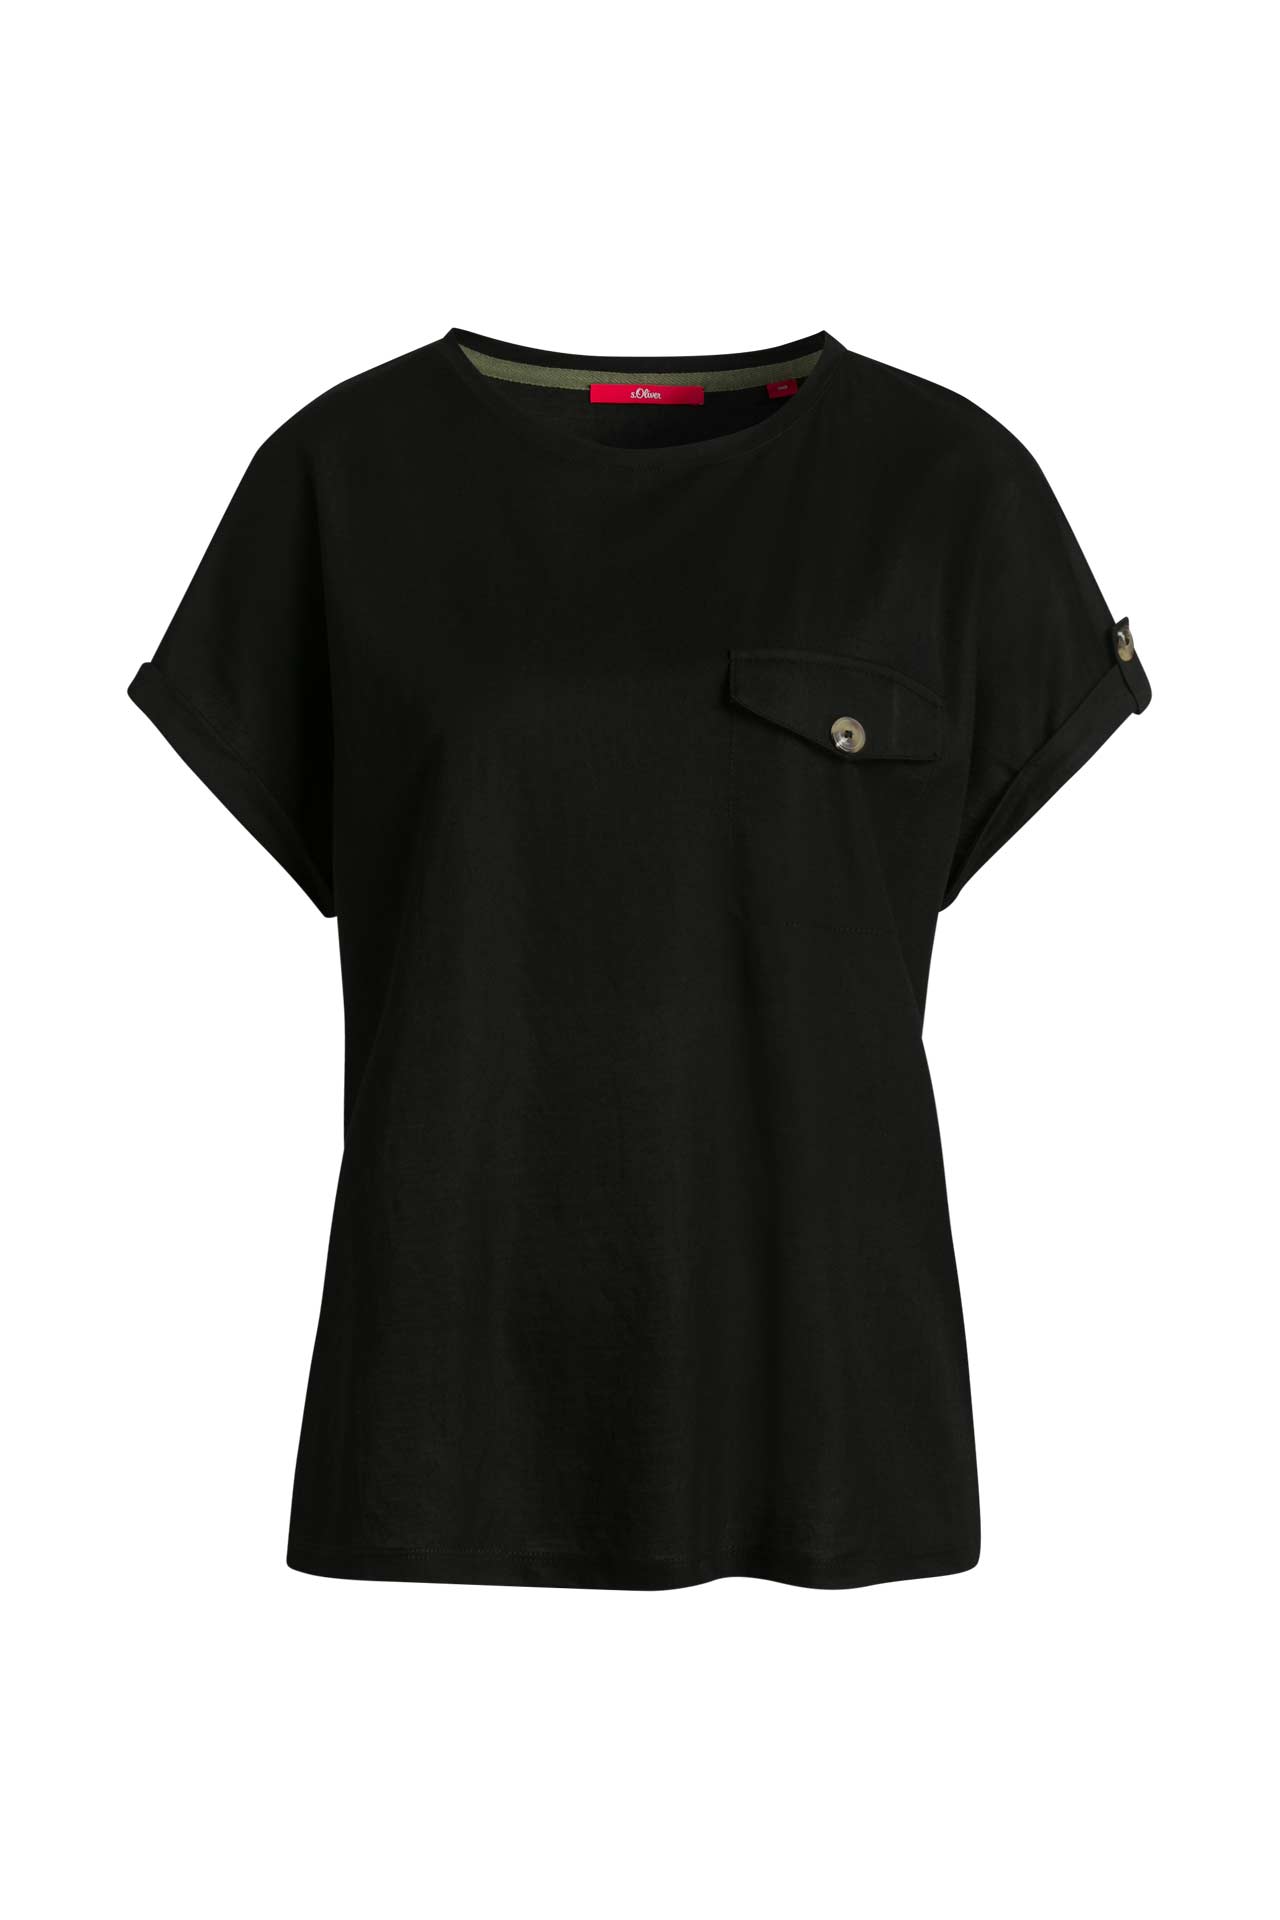 T-Shirt schwarz - S.OLIVER günstig kaufen online » Outletcity 